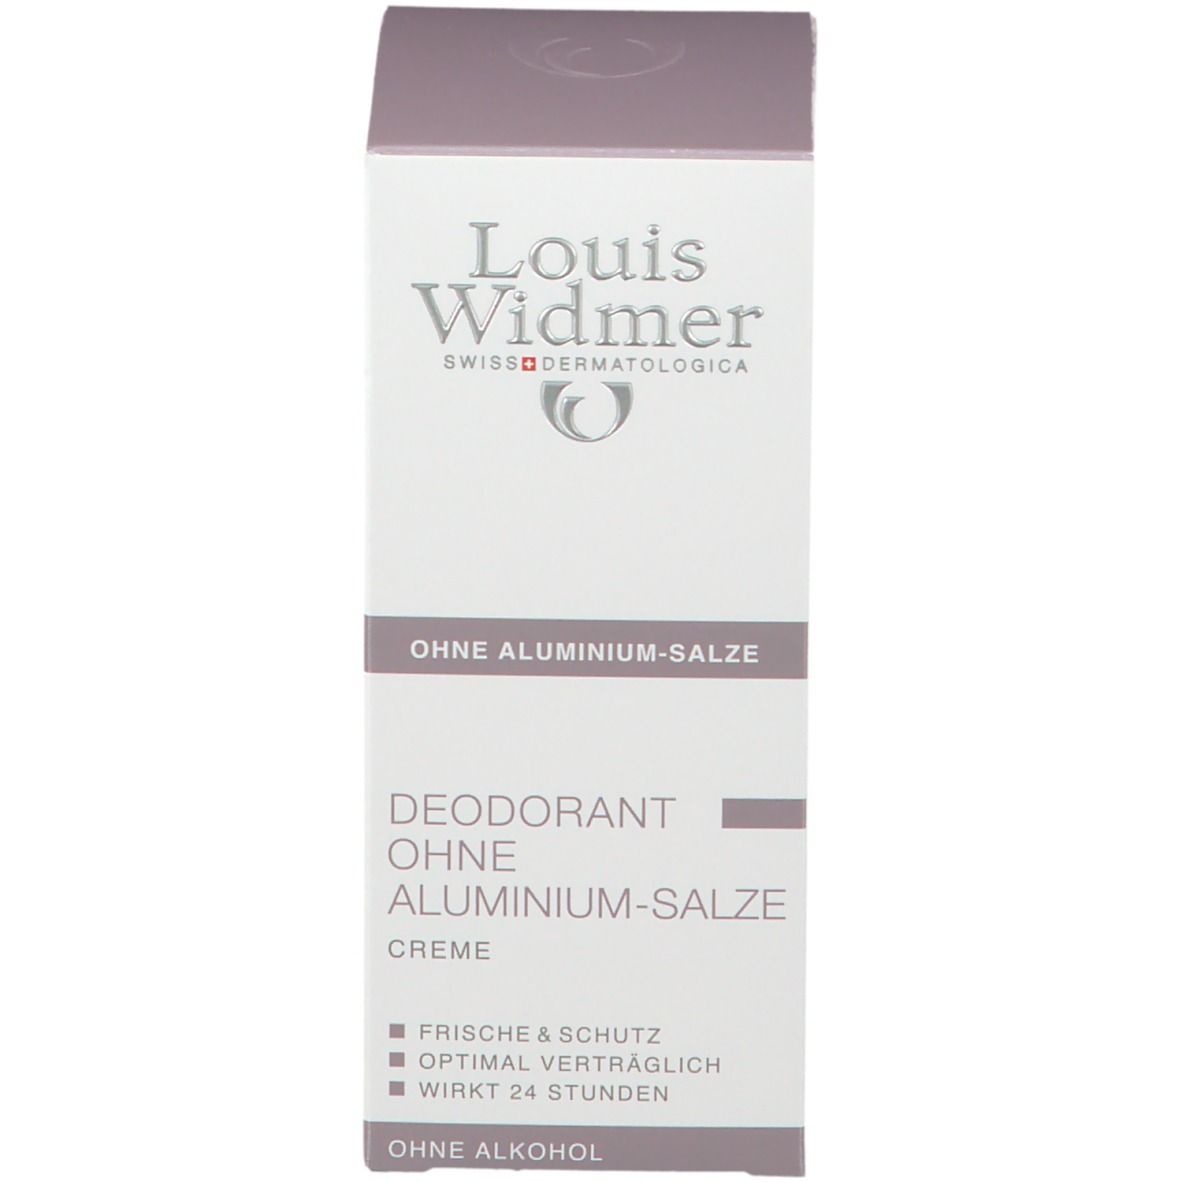 Louis Widmer Deodorant Creme leicht parfümiert